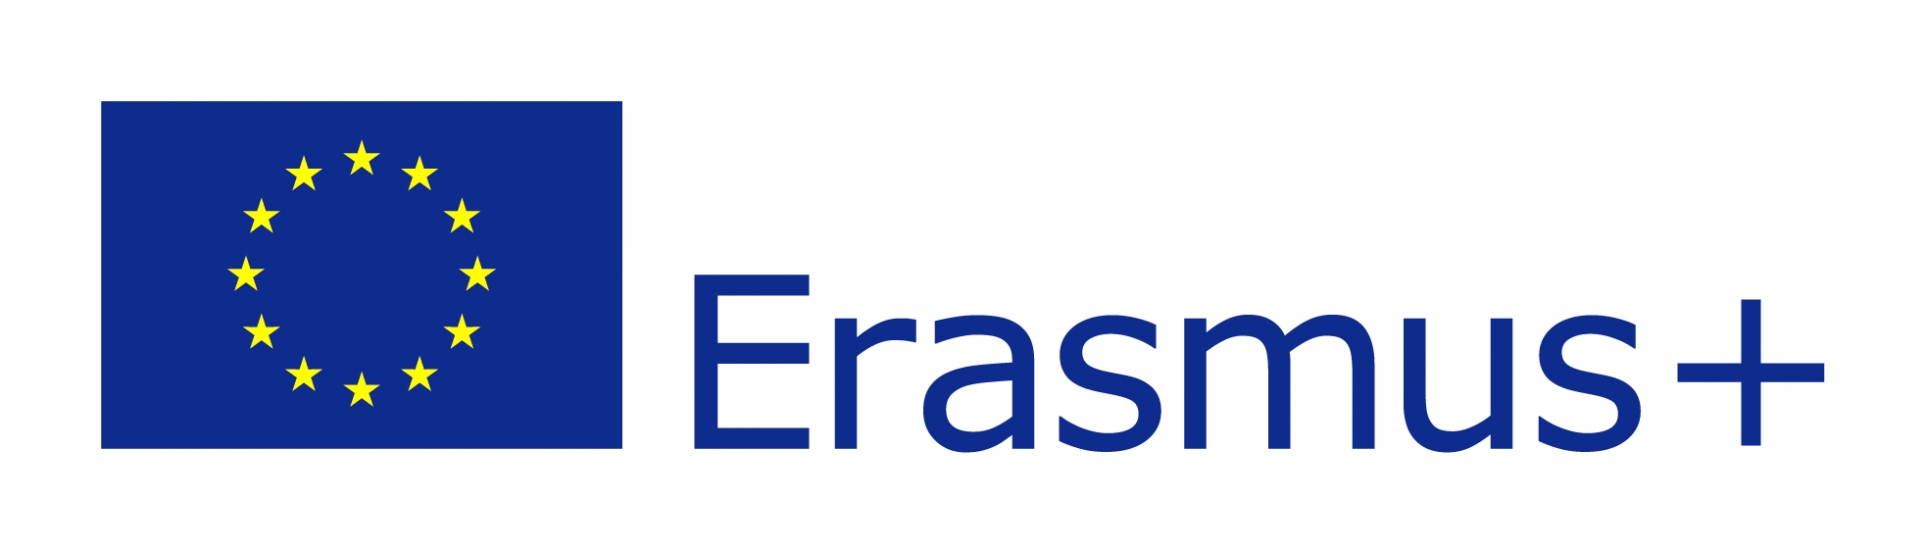 EU_flag-Erasmus2B_vect_POS.jpg